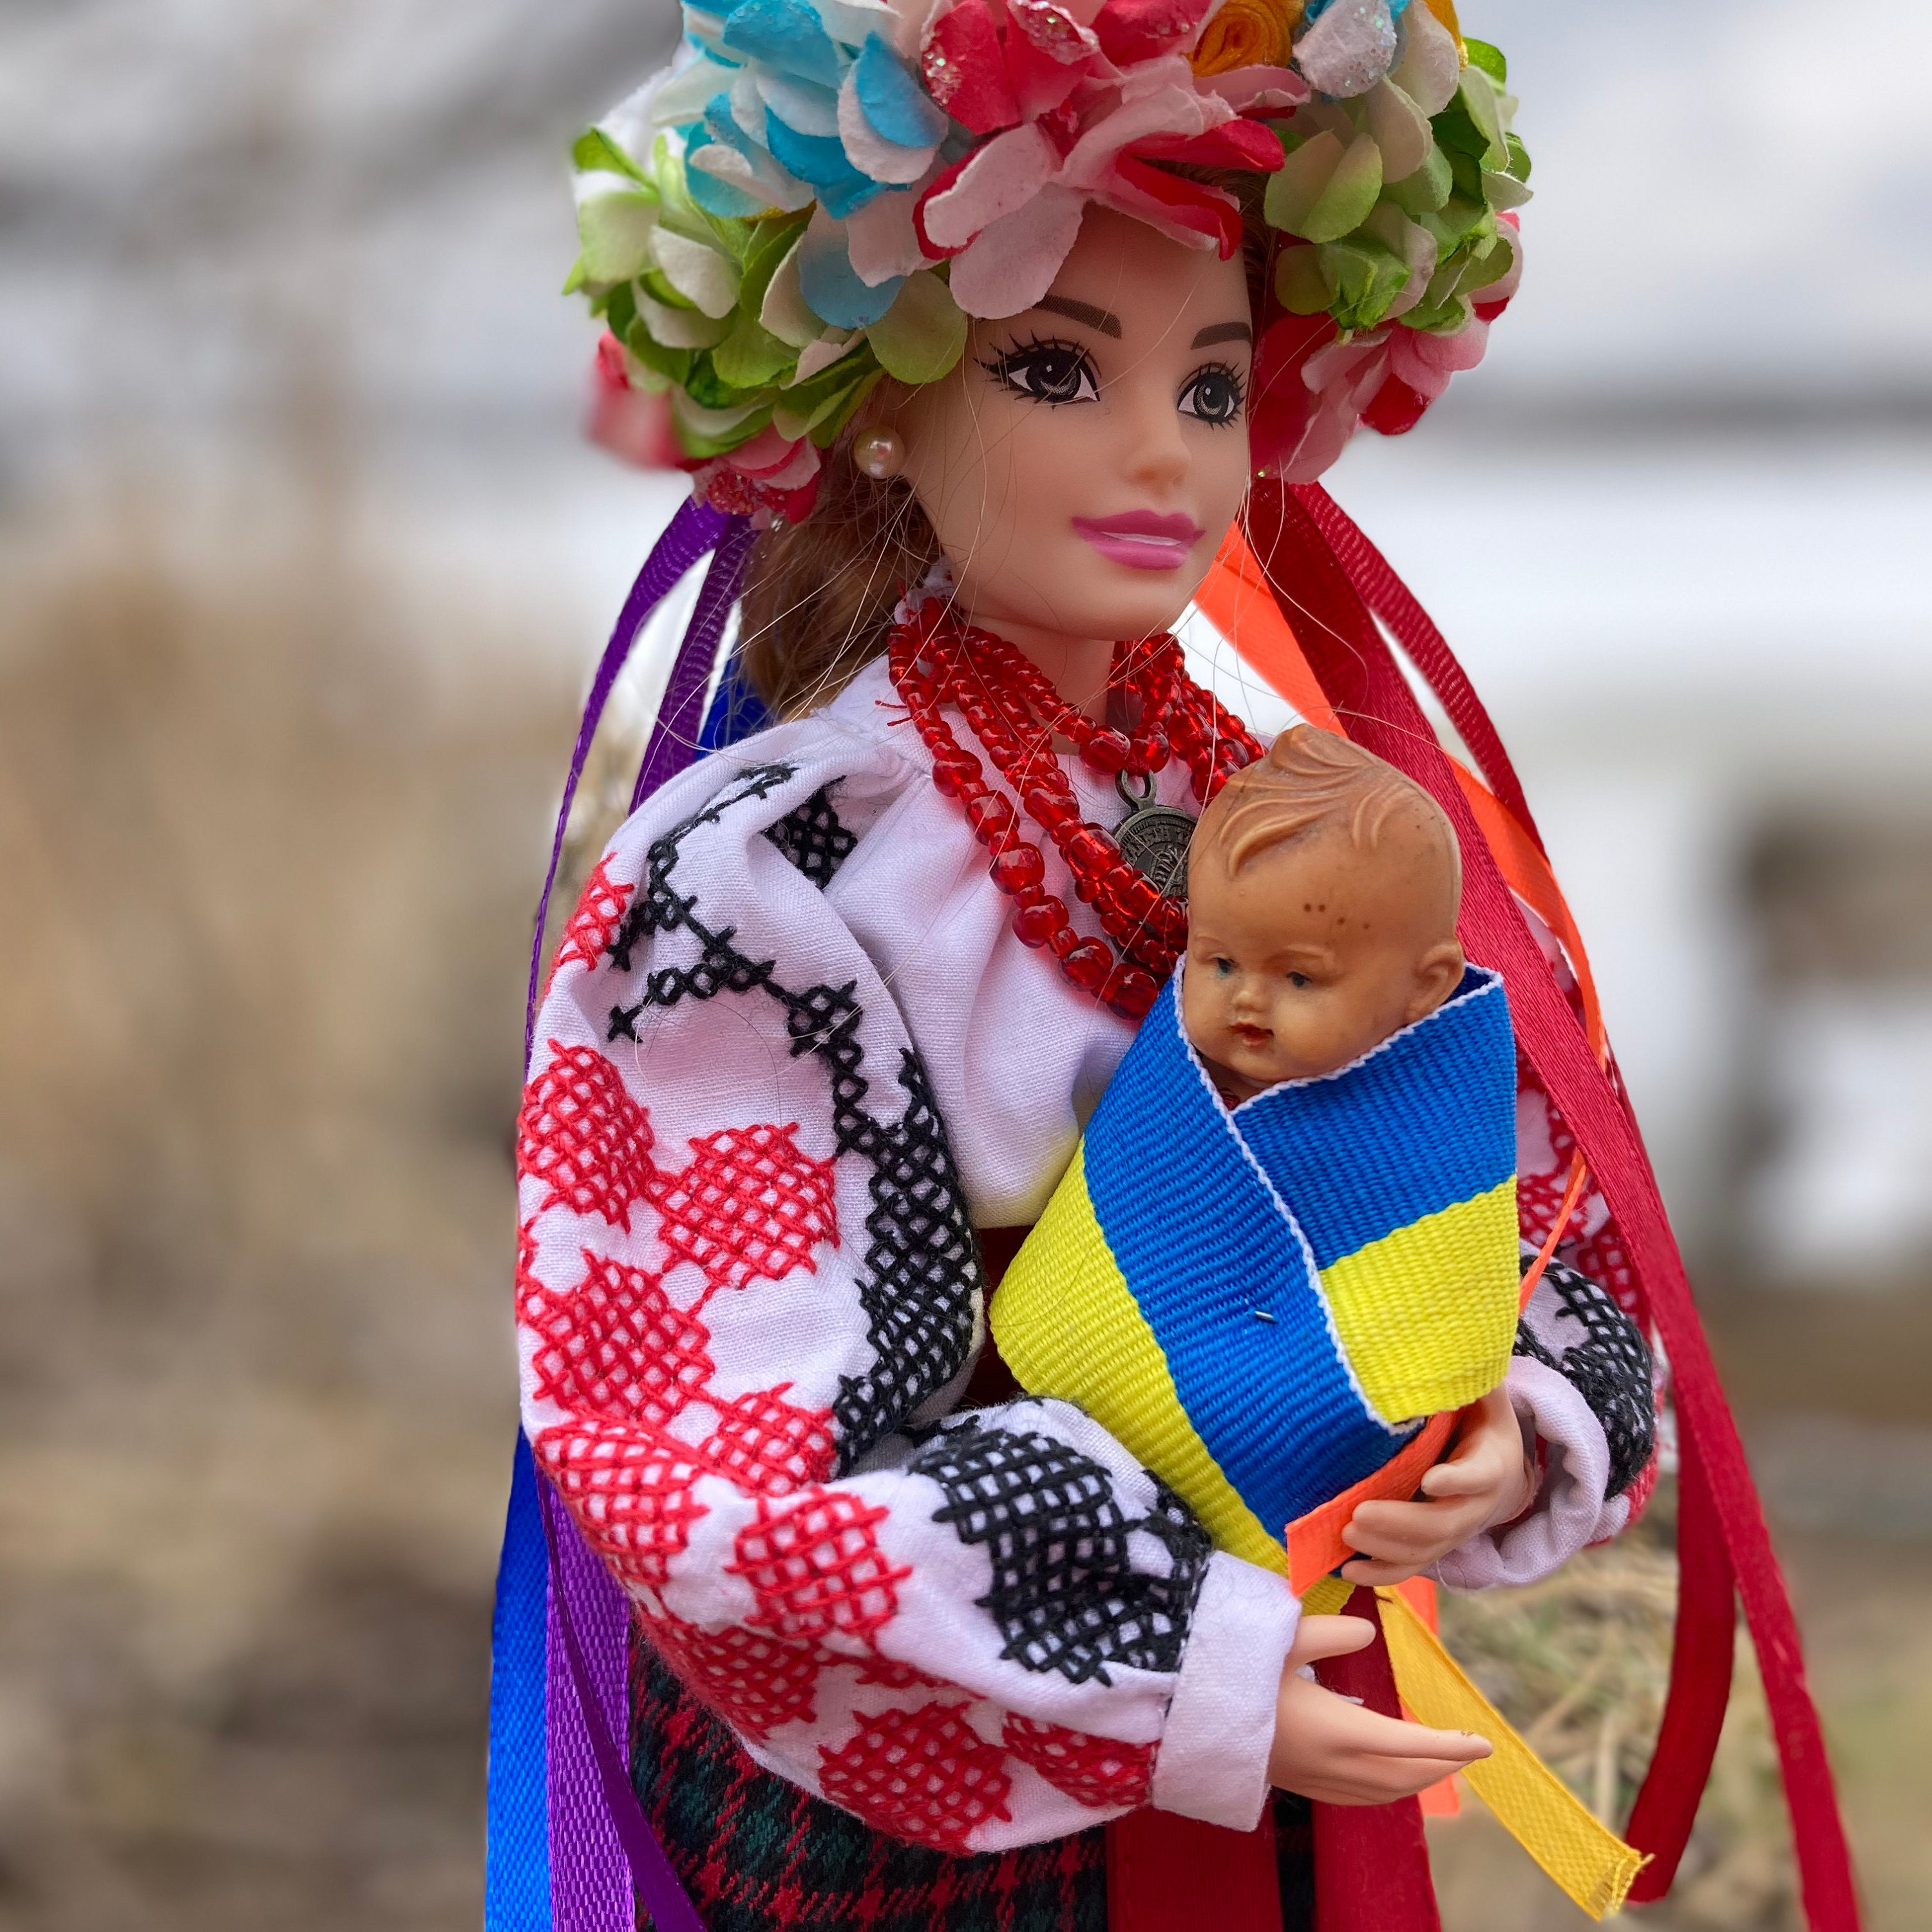 Barbie Curvy Country  Roupas, Cinto de croche, Roupas de boneca